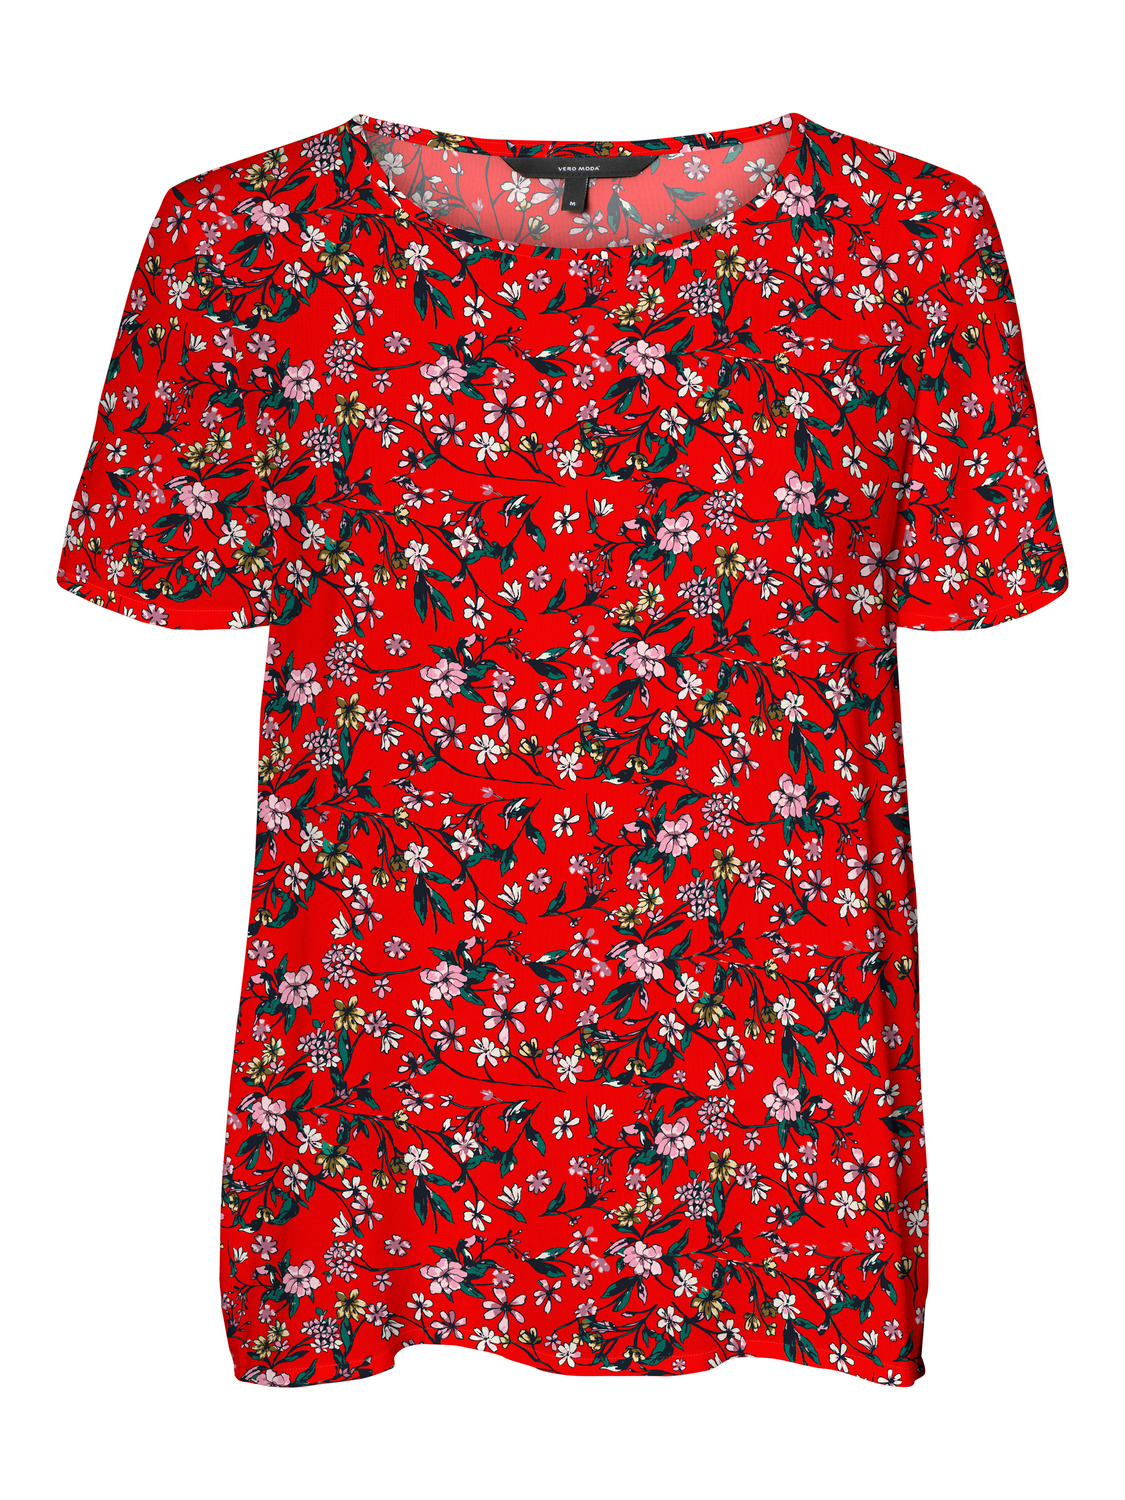 Odzież Kobiety VERO MODA Bluzka Simply w kolorze Ognisto-Czerwonym 